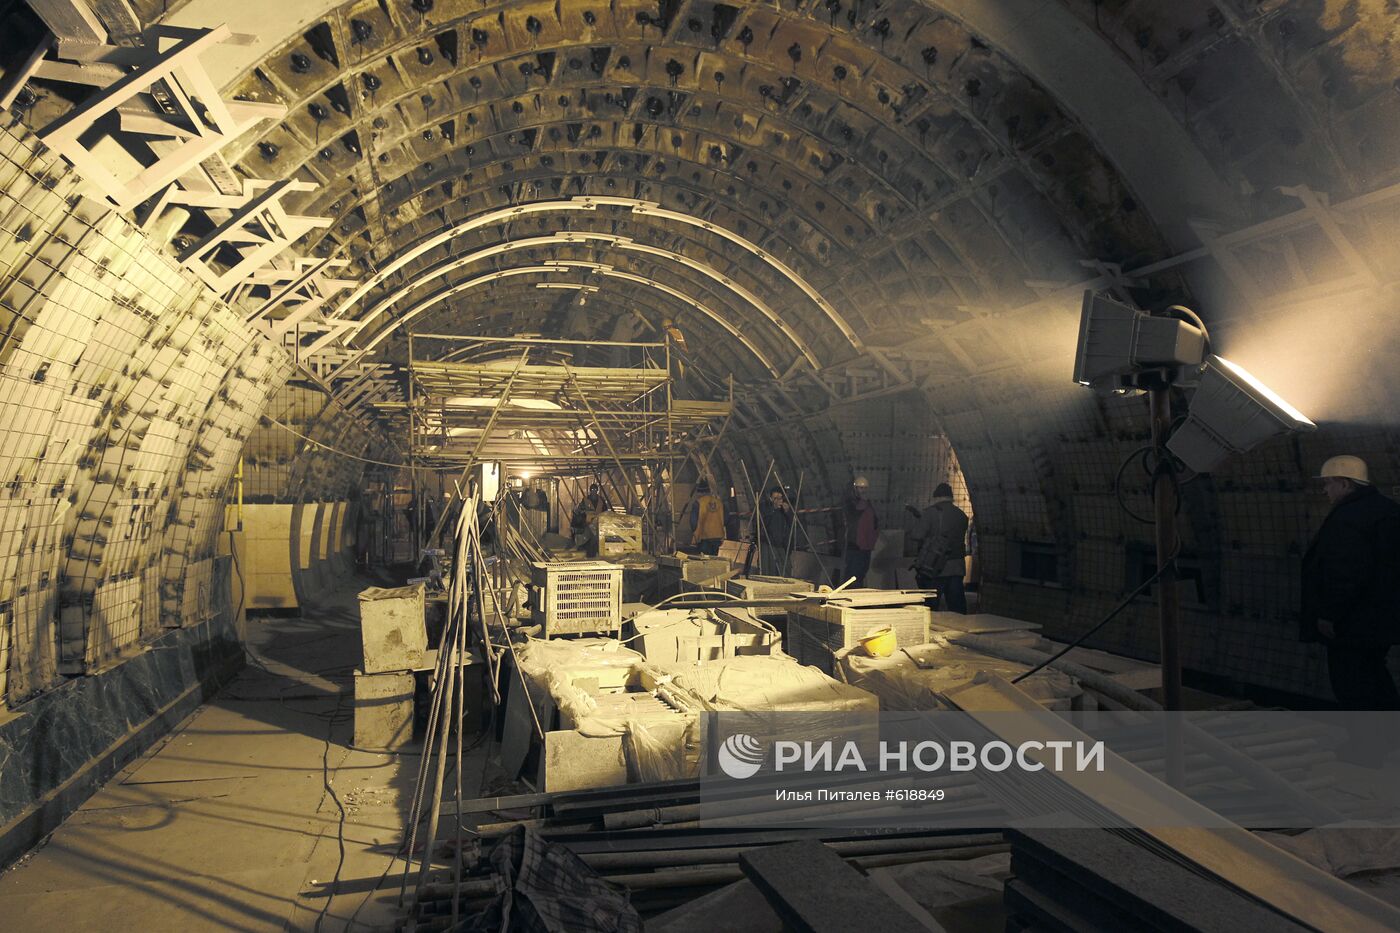 Строительство станций метро "Достоевская" и "Марьина роща"